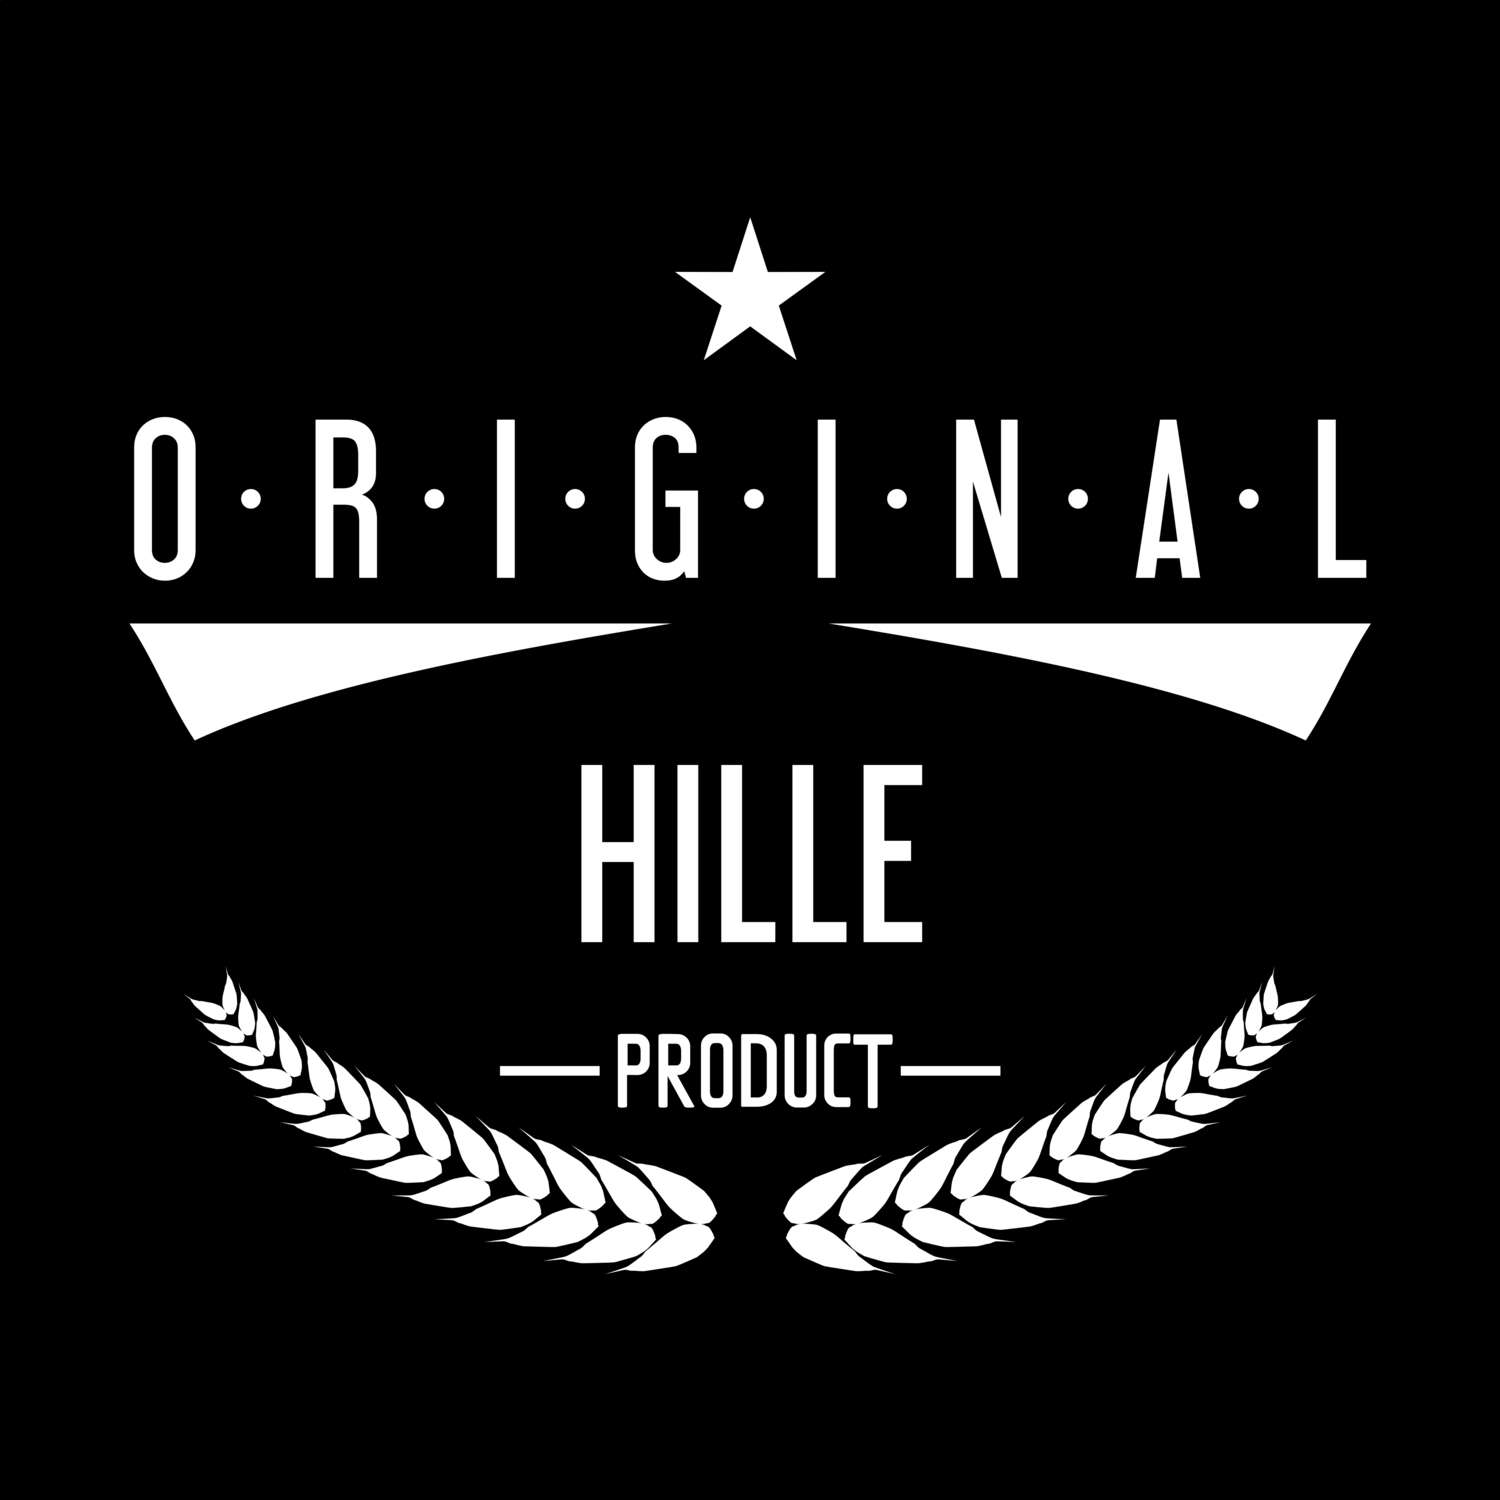 Hille T-Shirt »Original Product«